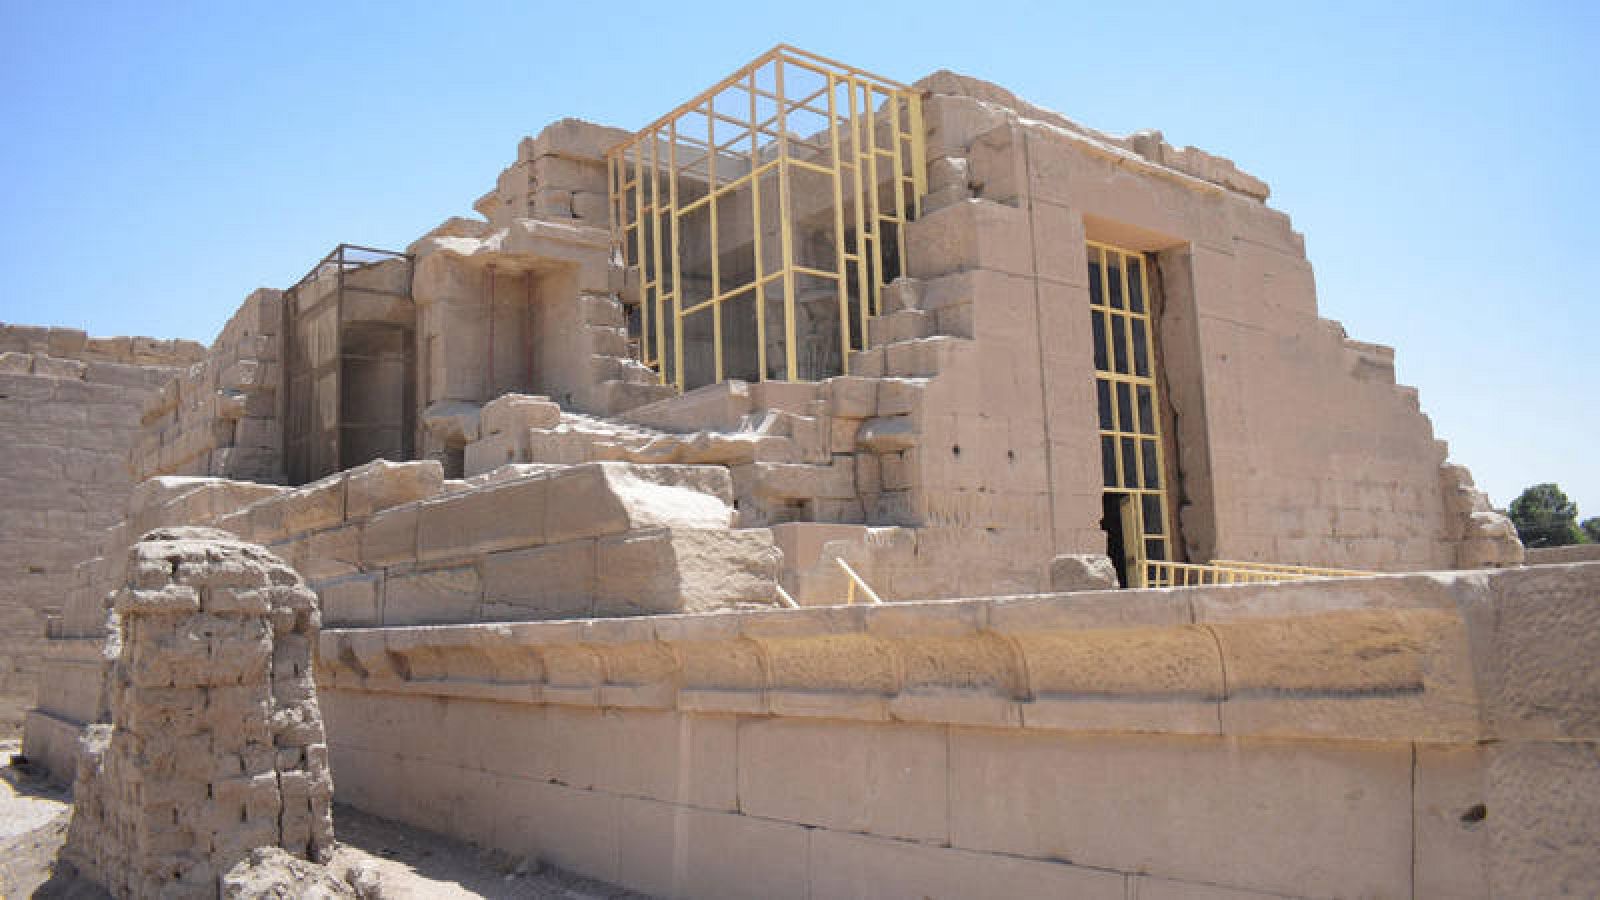 Vista del Templo de Opet, ubicado dentro del complejo faraónico de Karnak en la ciudad monumental de Luxor